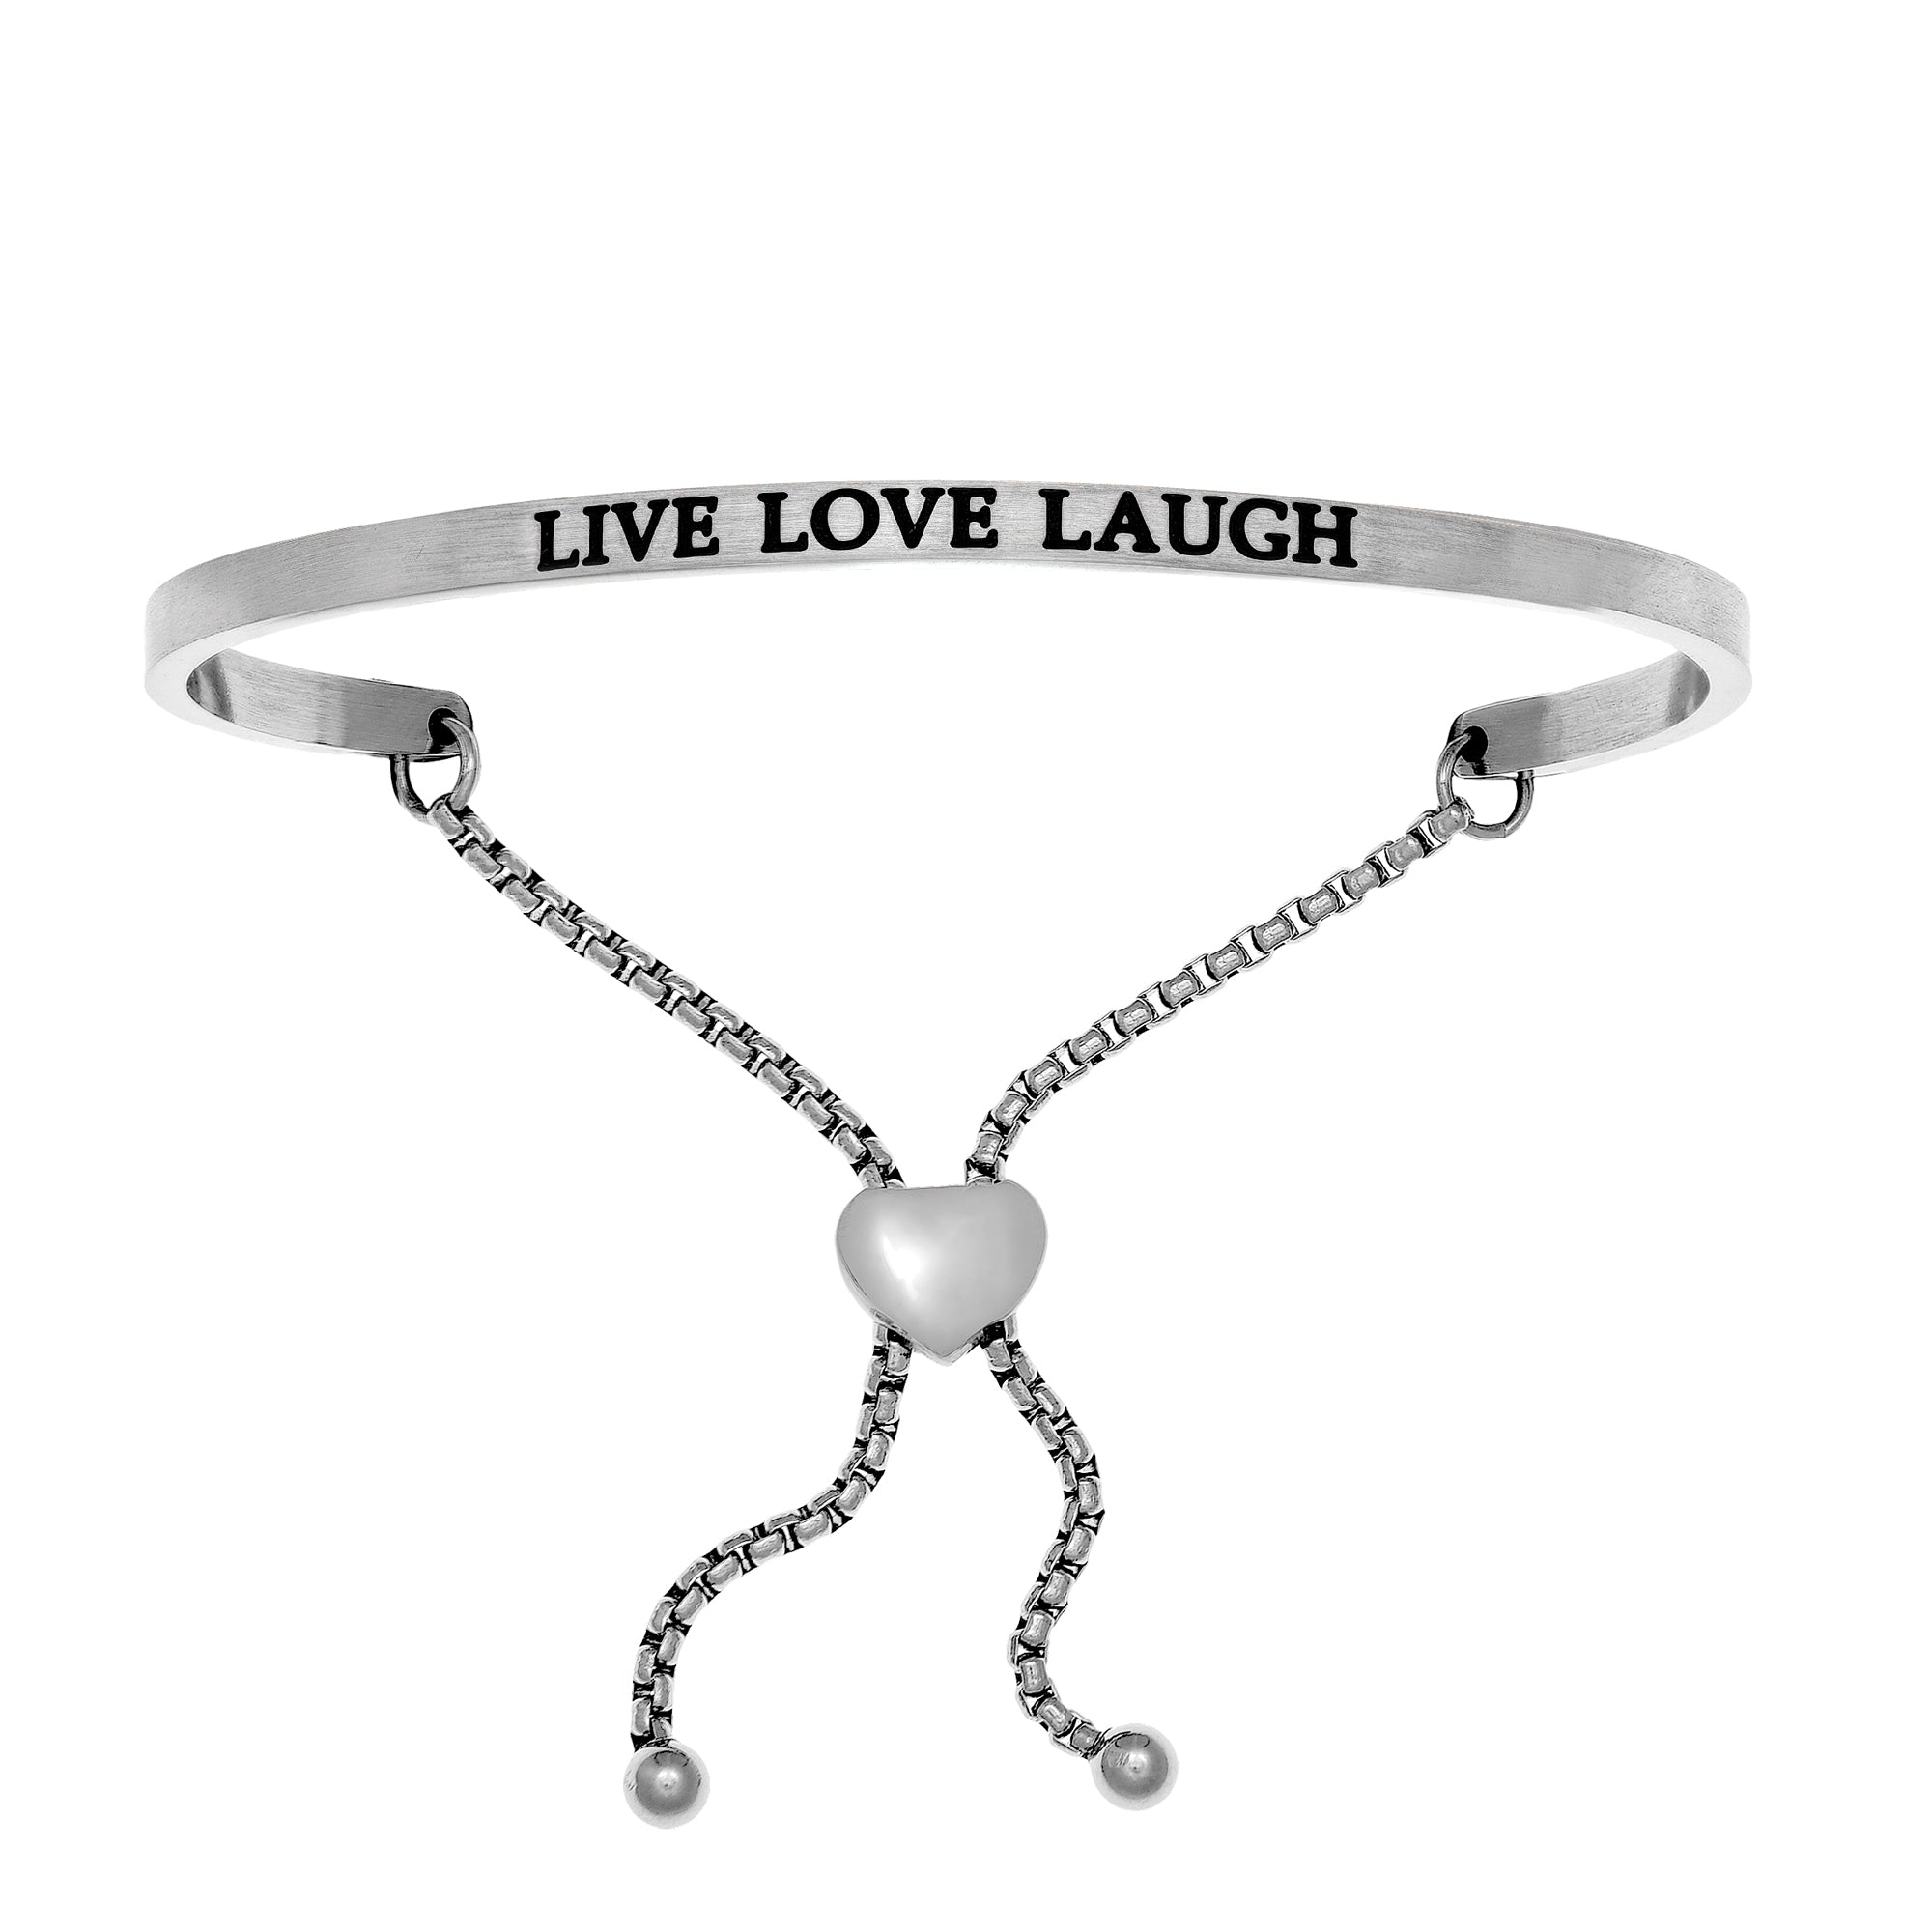 Intuitions Bracciale regolabile in acciaio inossidabile LIVE LOVE LAUGH con accenti di diamanti, gioielli di design per uomini e donne